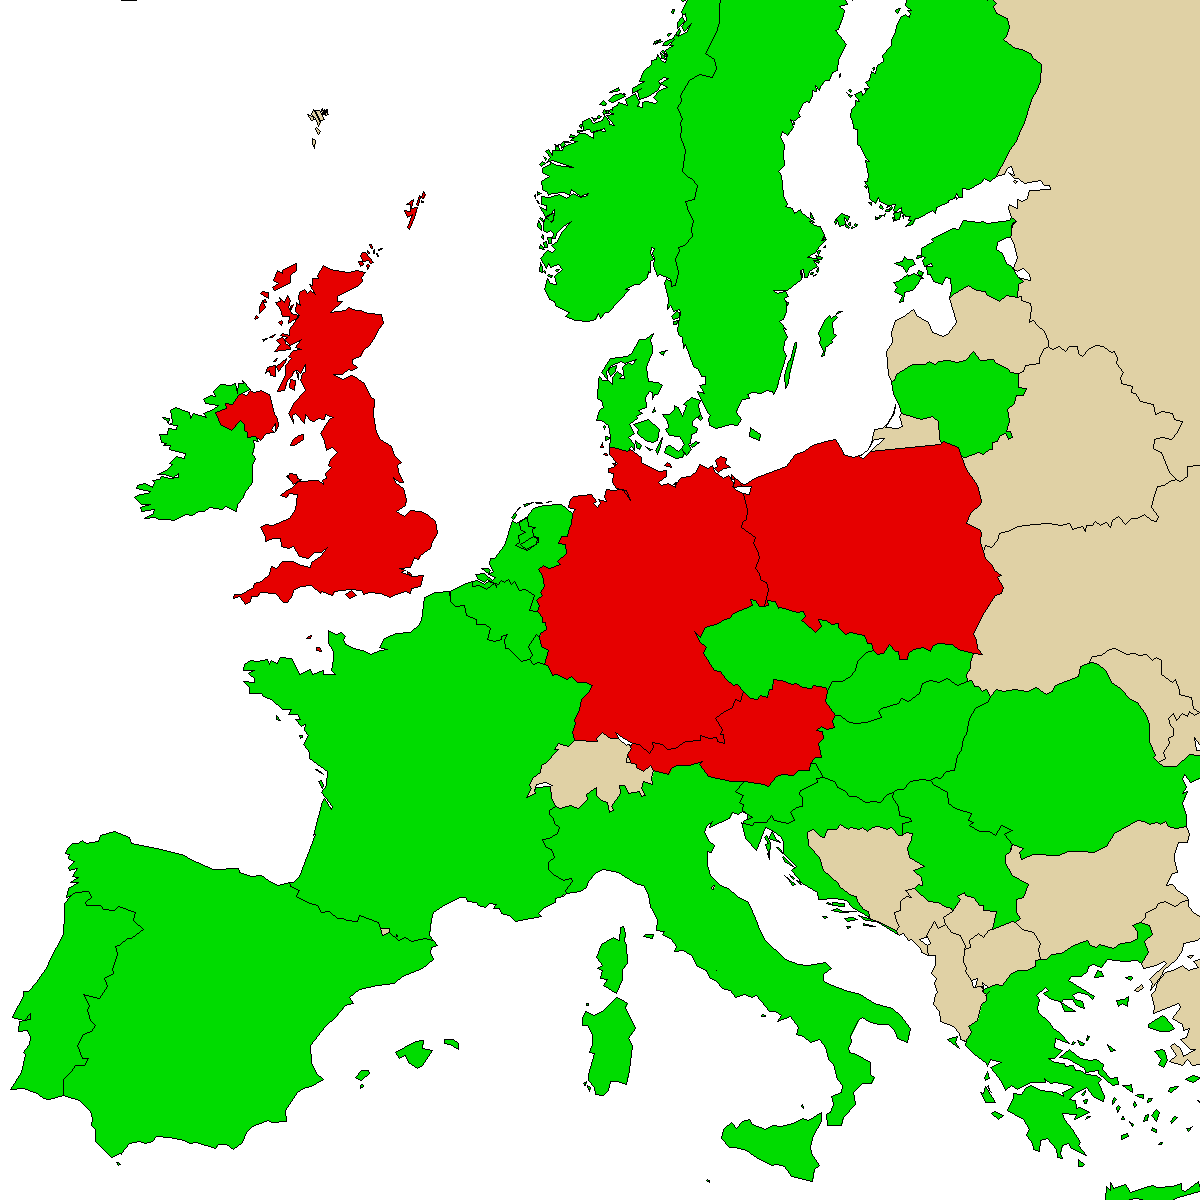 Mapa de informações legais para nosso produto Mefedrene, verde são países sem proibição, vermelho com proibição, cinza é desconhecido